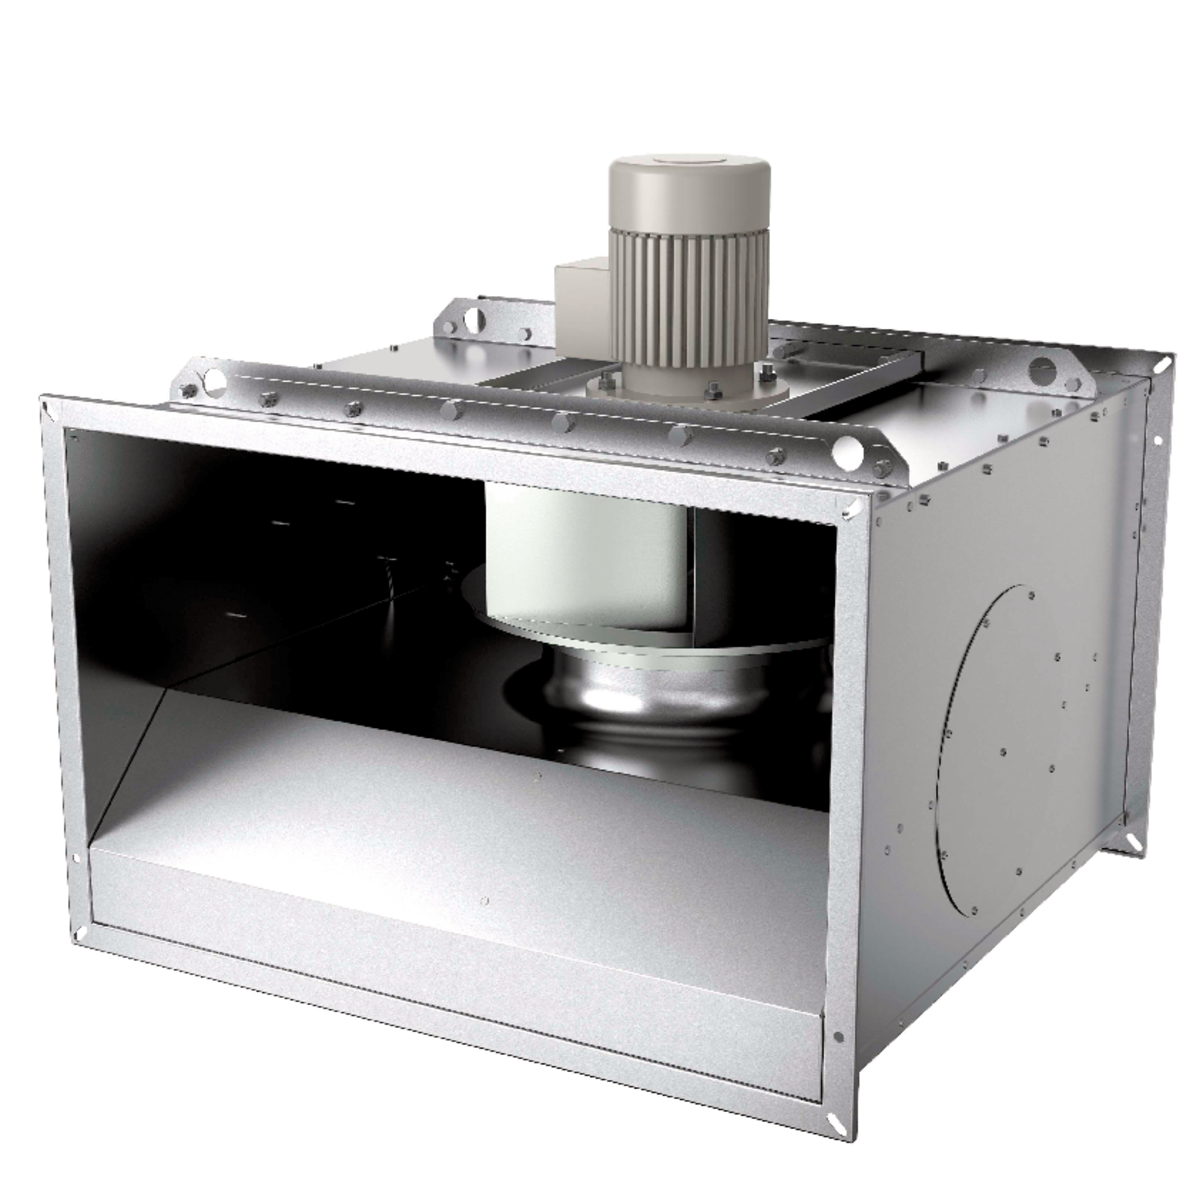 BKF - Ventilateurs centrifuges - Ventilateurs (Ventilation et Traitement d’air) - Produits Ventilation & Traitement d’air - Systemair